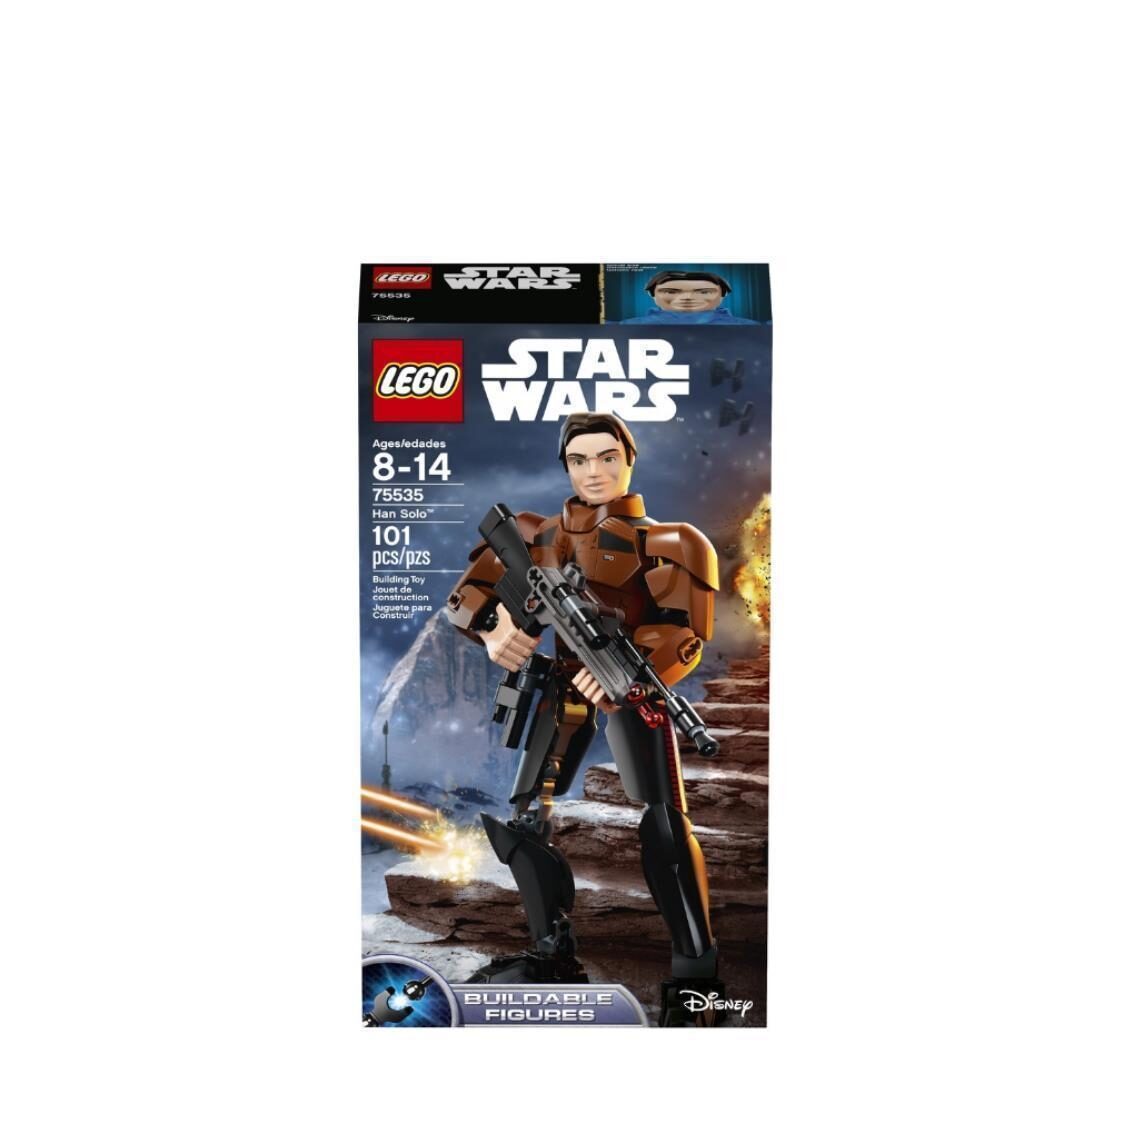 LEGO Star Wars - Han Solo 75535 V29